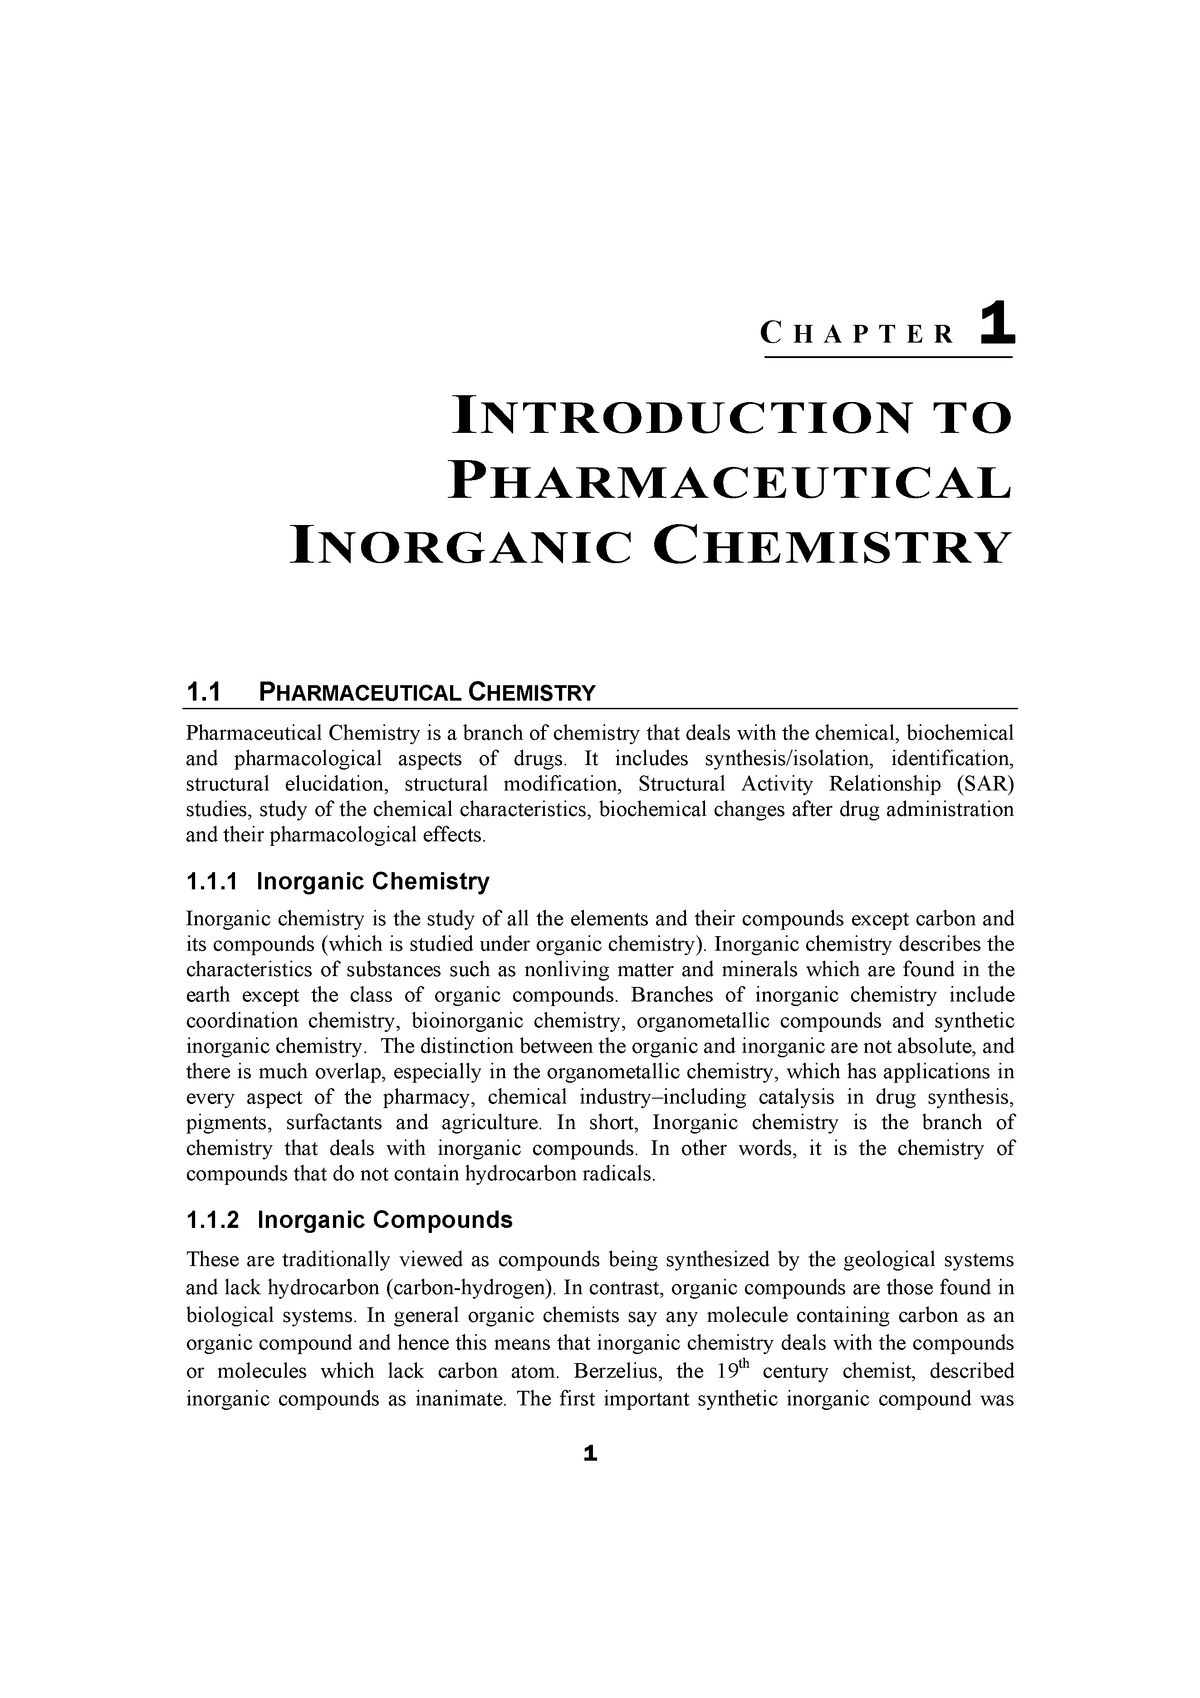 inorganic chemistry thesis